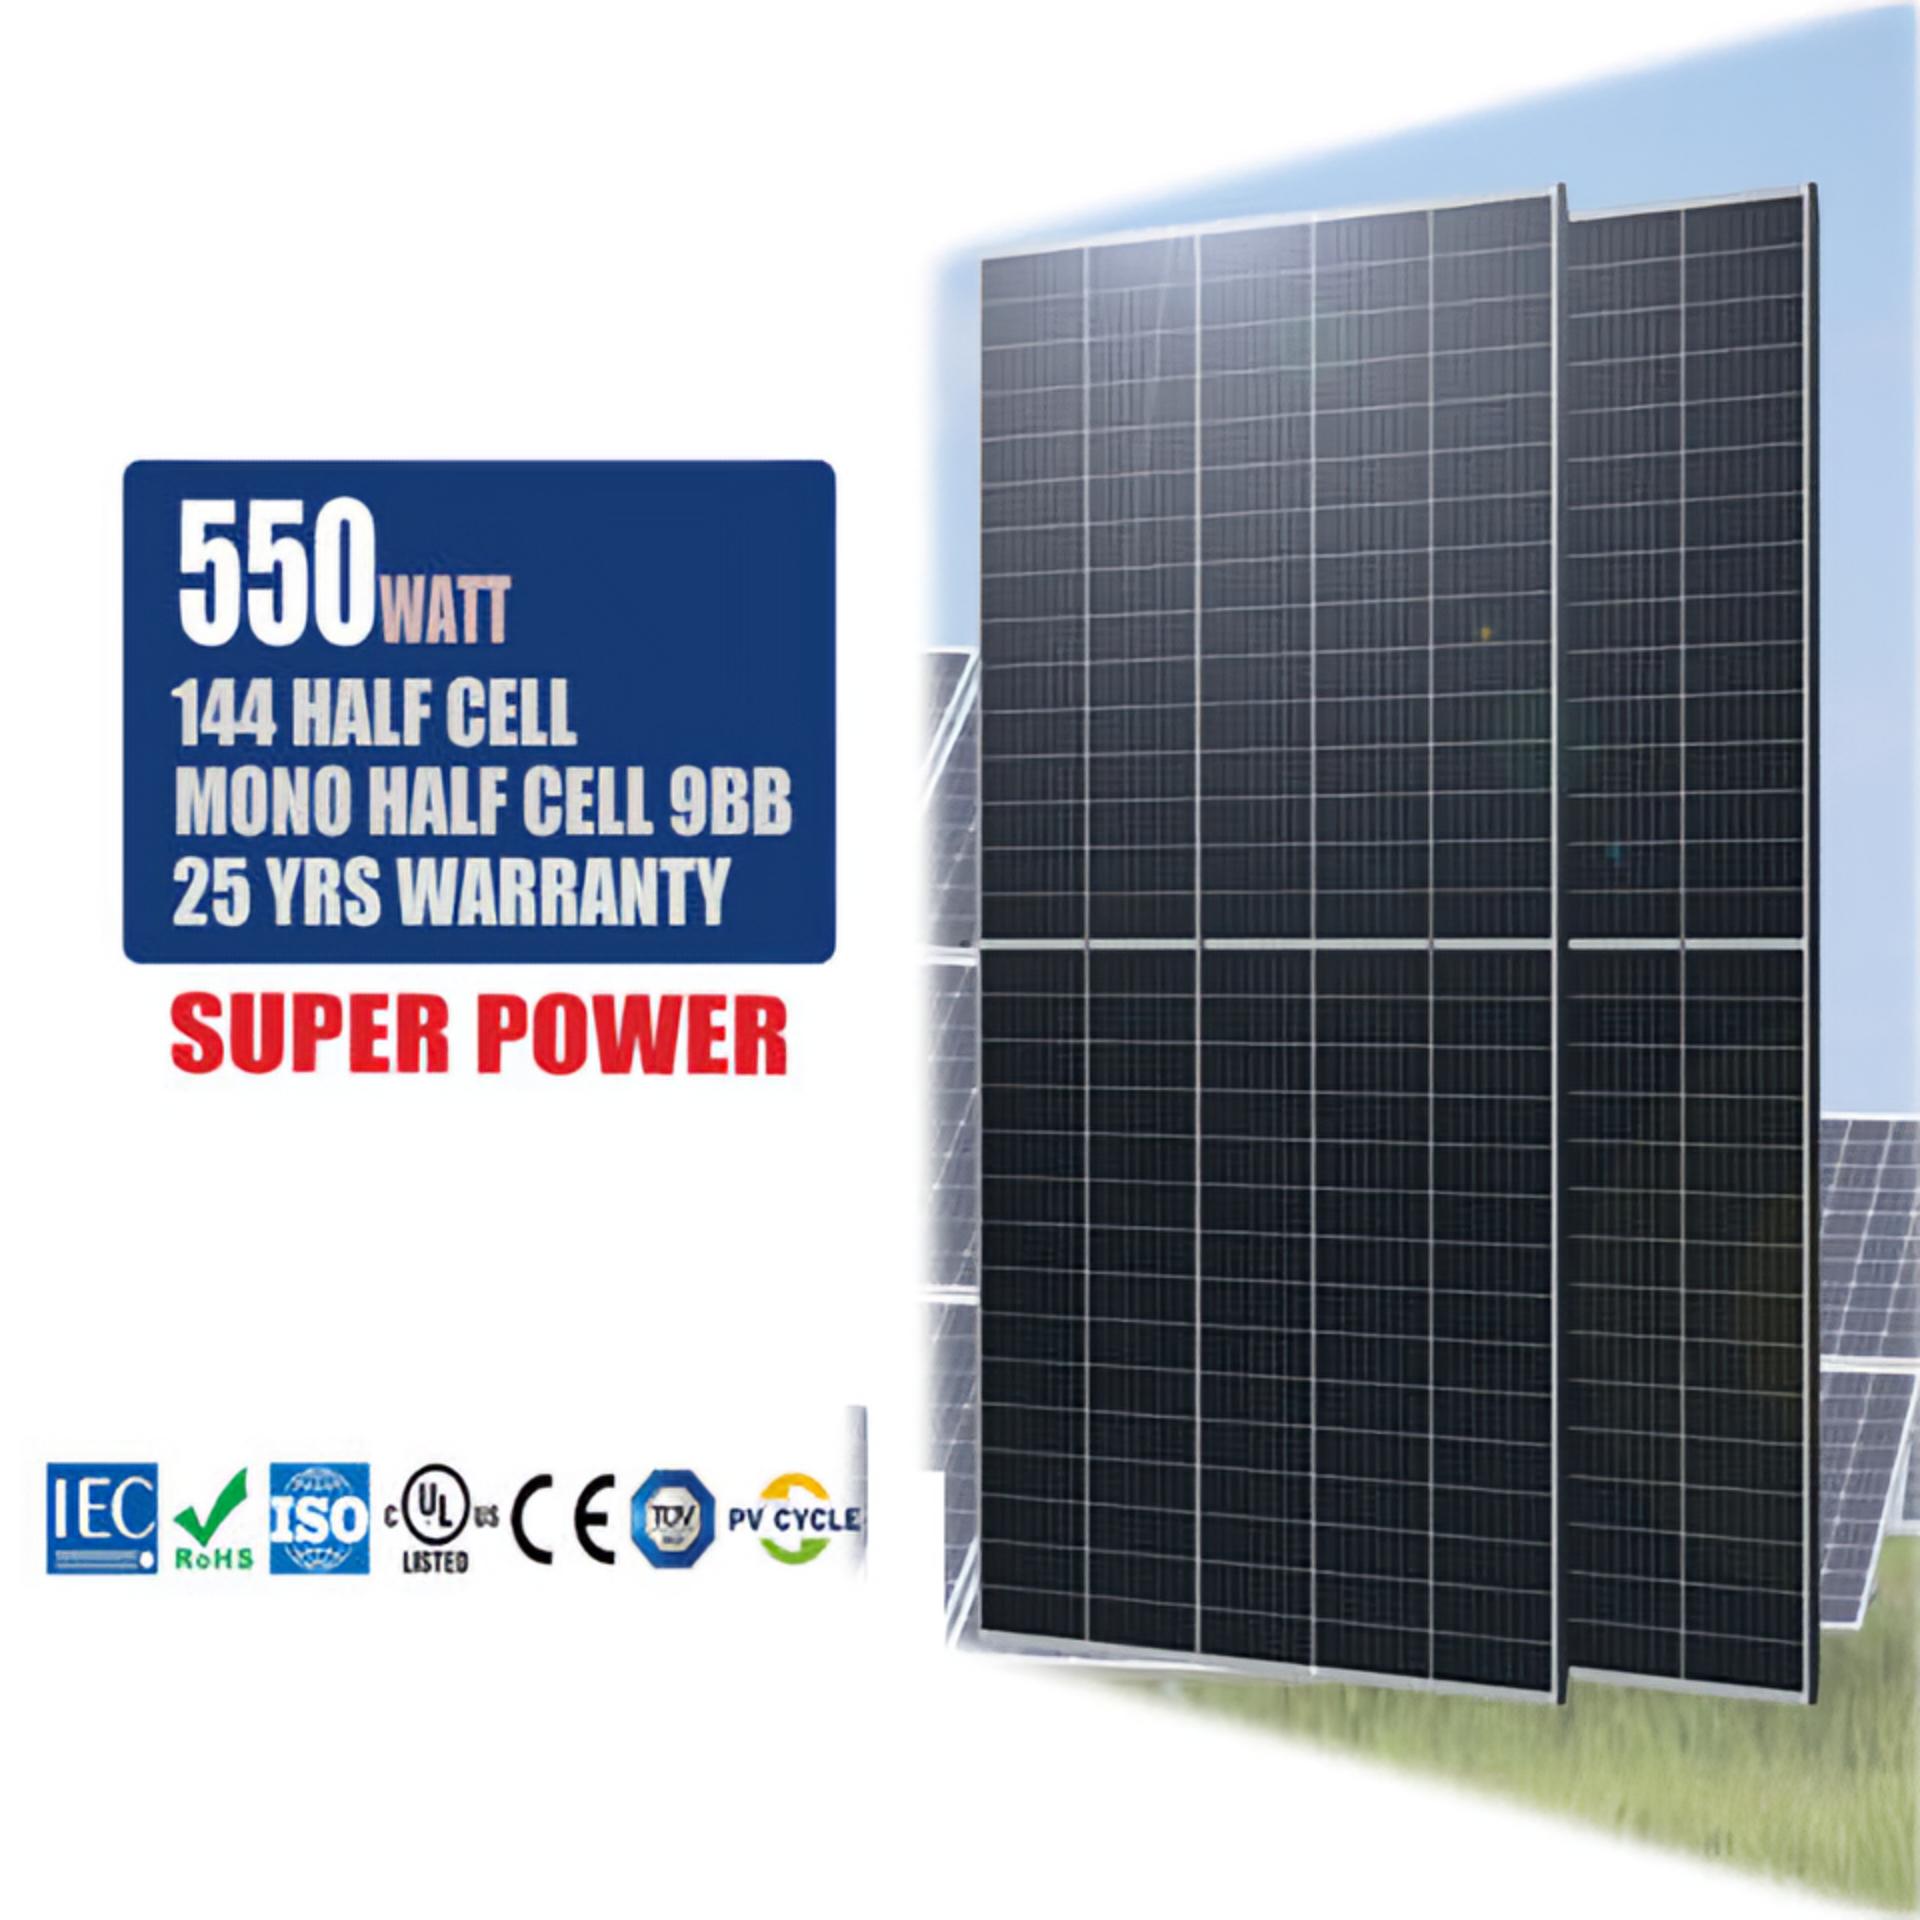 高效率发电Tiger太阳能电池组件550W现货晶科太阳能板